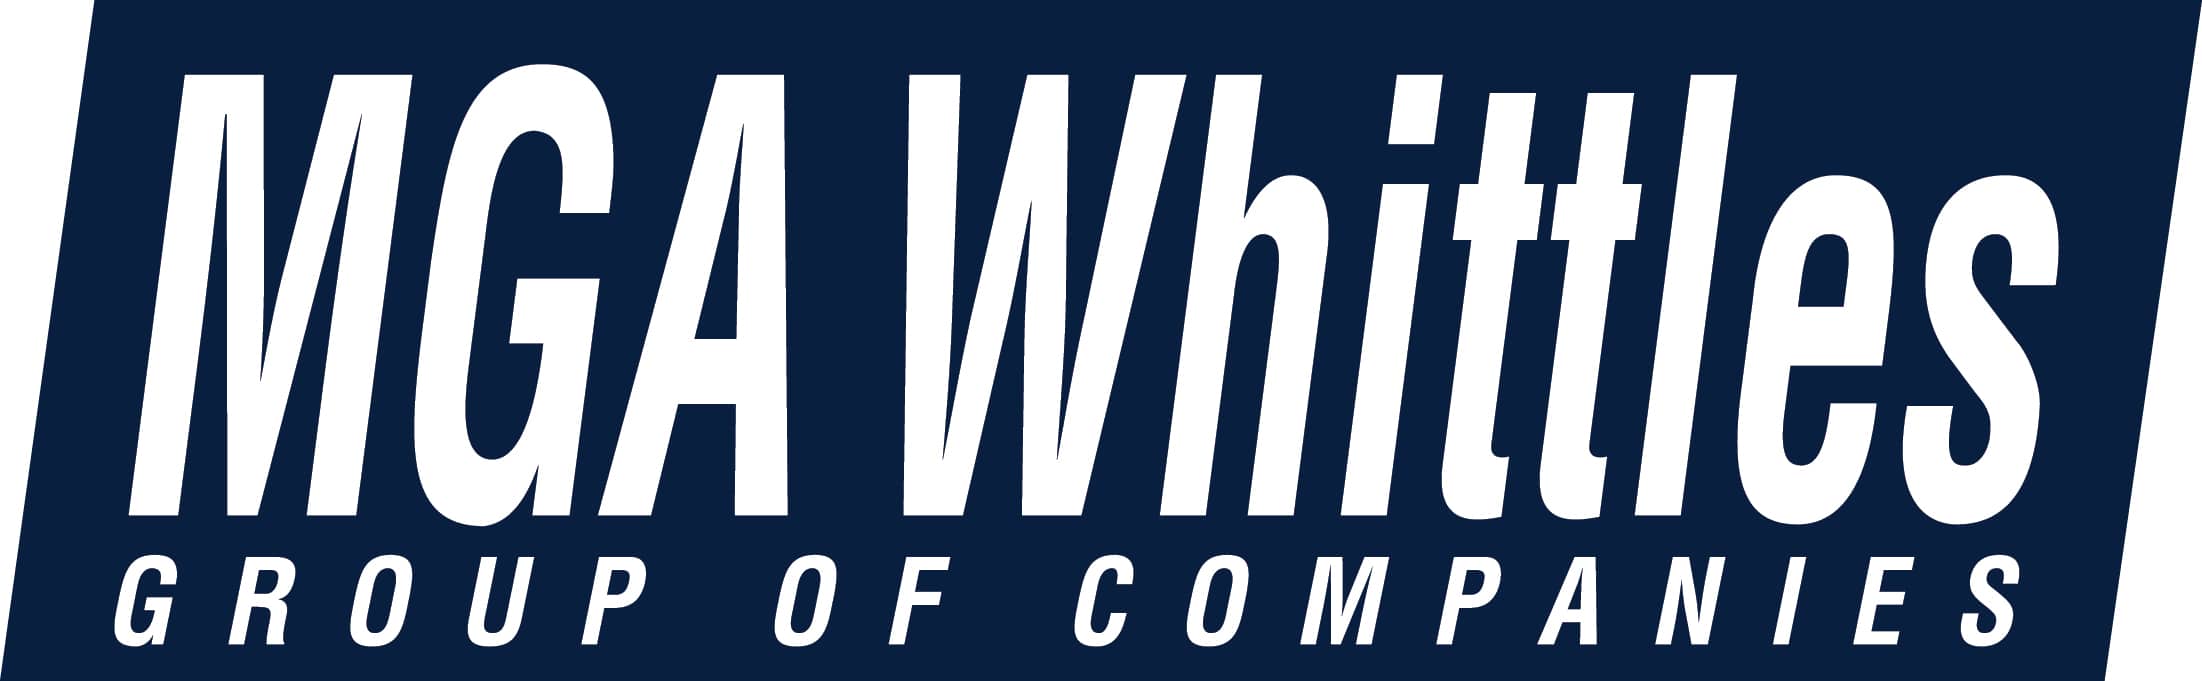 MGA Whittles logo